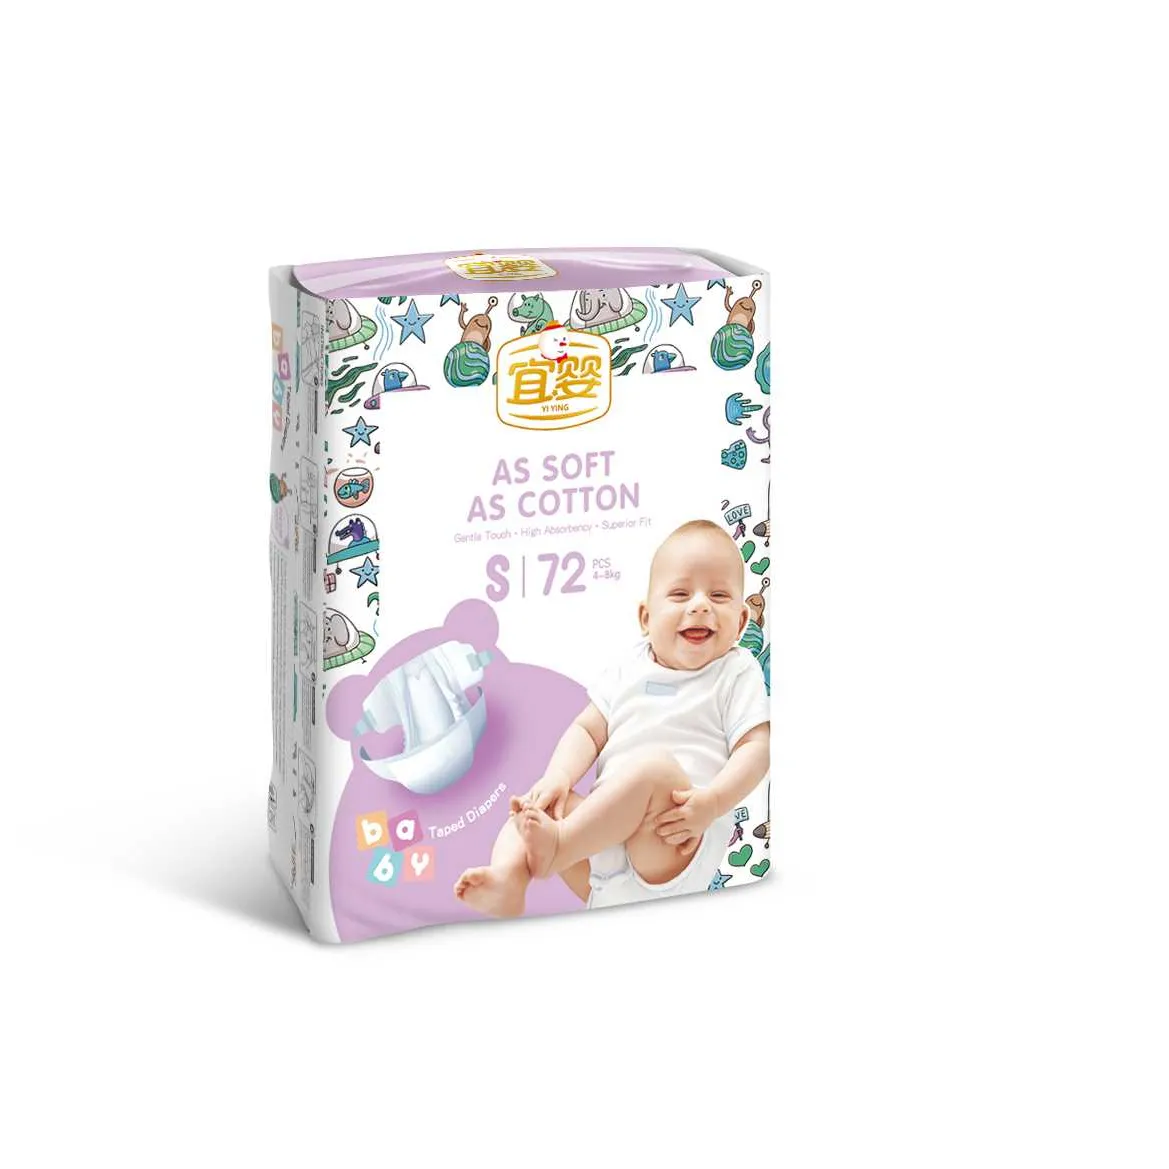 Ücretsiz örnek özel toptan ucuz fiyat bebek bezi japonya Sap süper emici performans sıcak satış tek kullanımlık bebek bezi